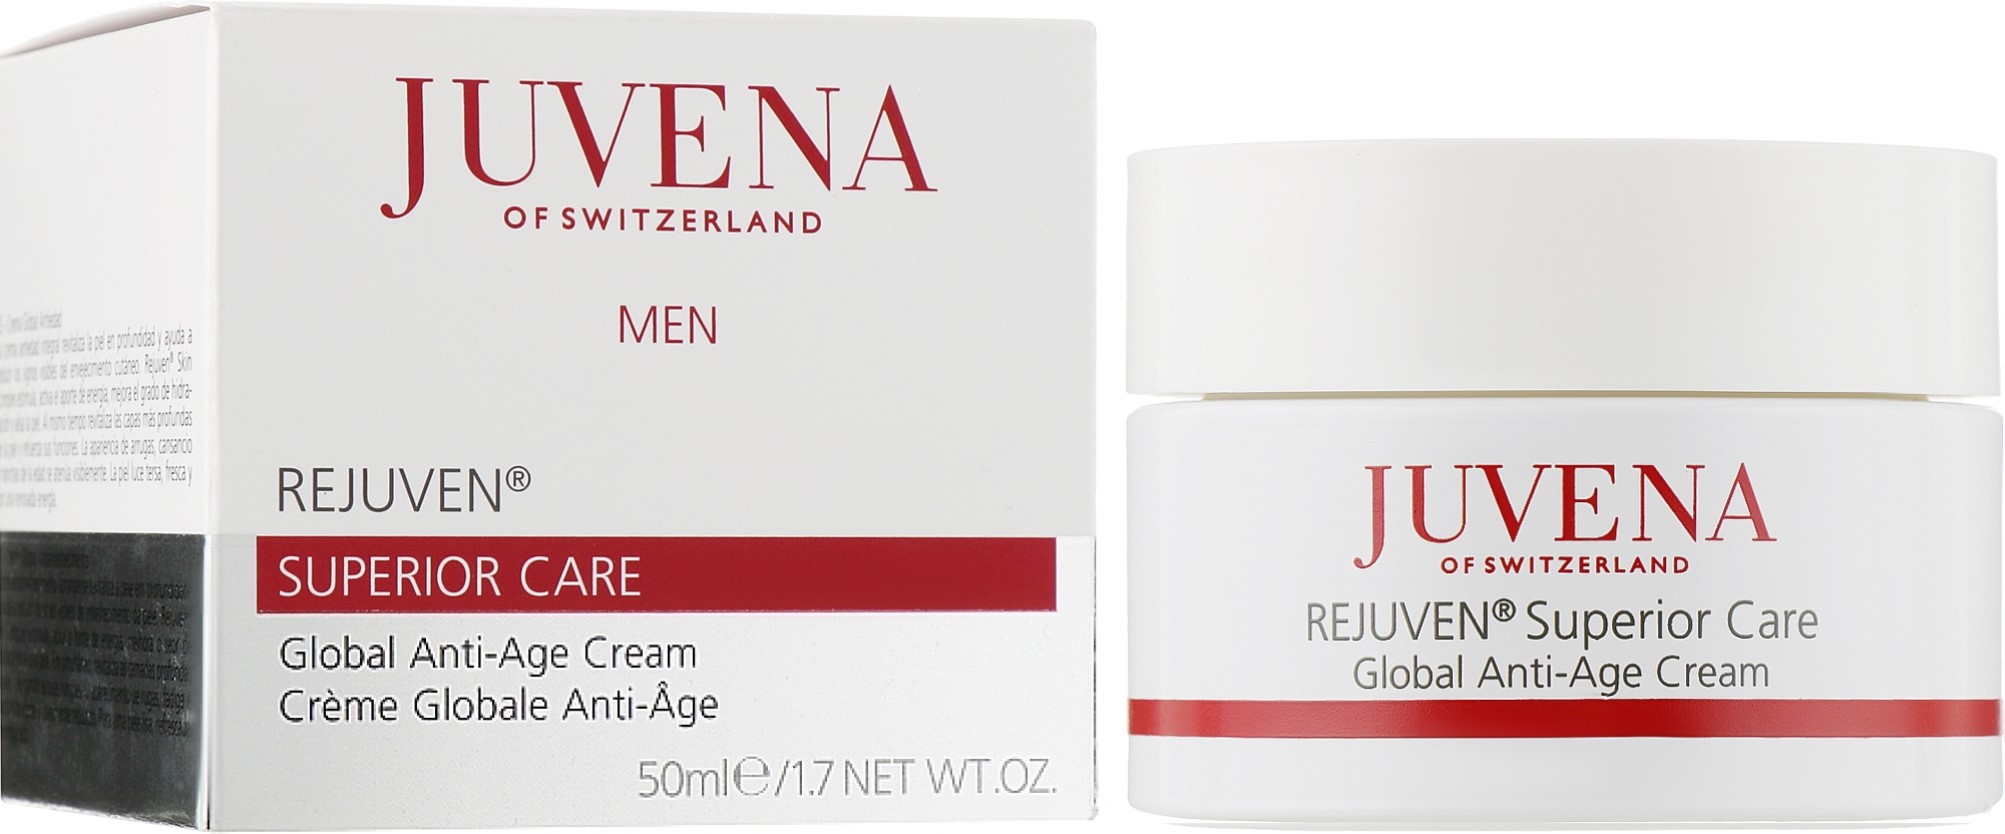 Ювена капсулы отзывы цена. Антивозрастной крем Juvena Rejuven® men Superior overall Anti-age Cream.